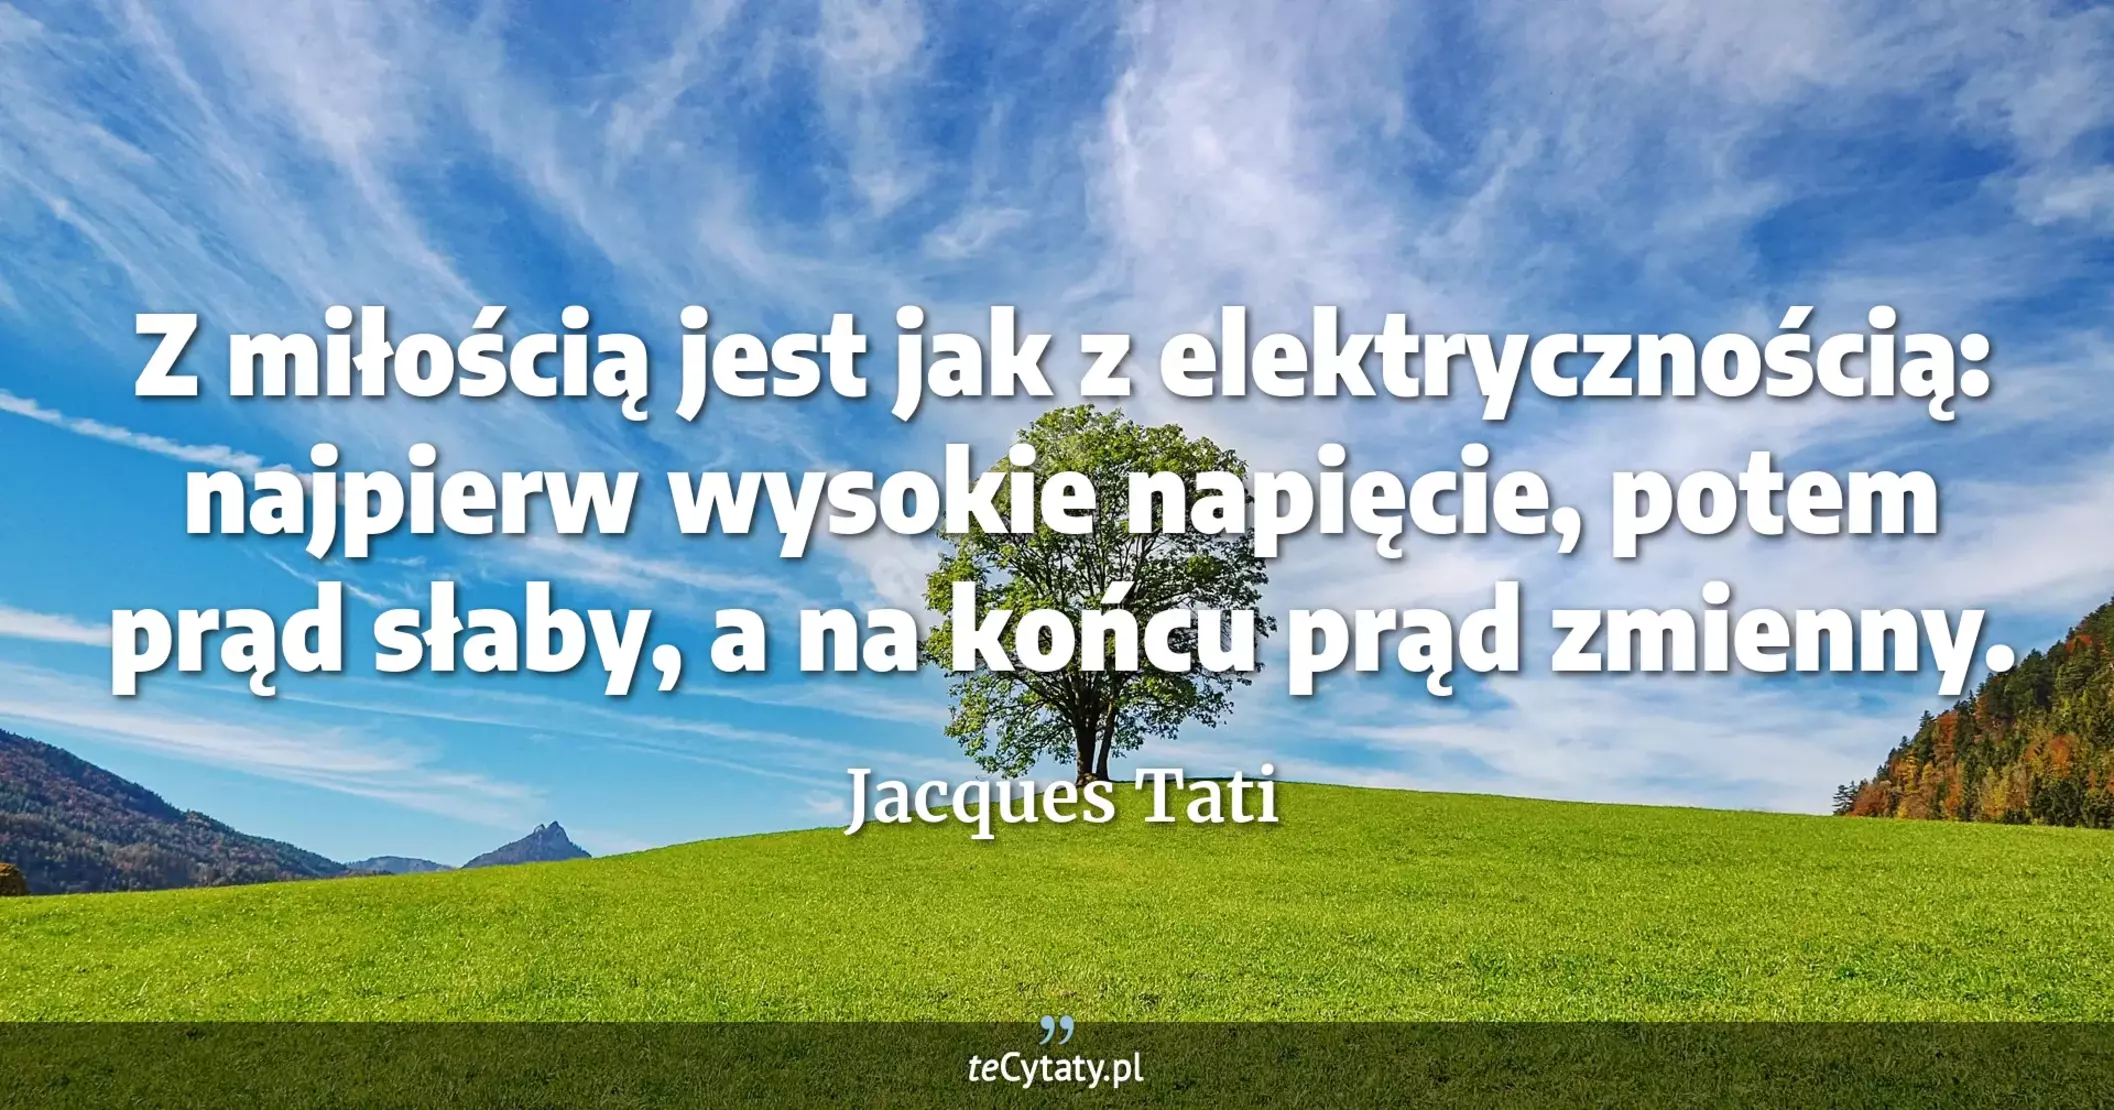 Z miłością jest jak z elektrycznością: najpierw wysokie napięcie, potem prąd słaby, a na końcu prąd zmienny. - Jacques Tati